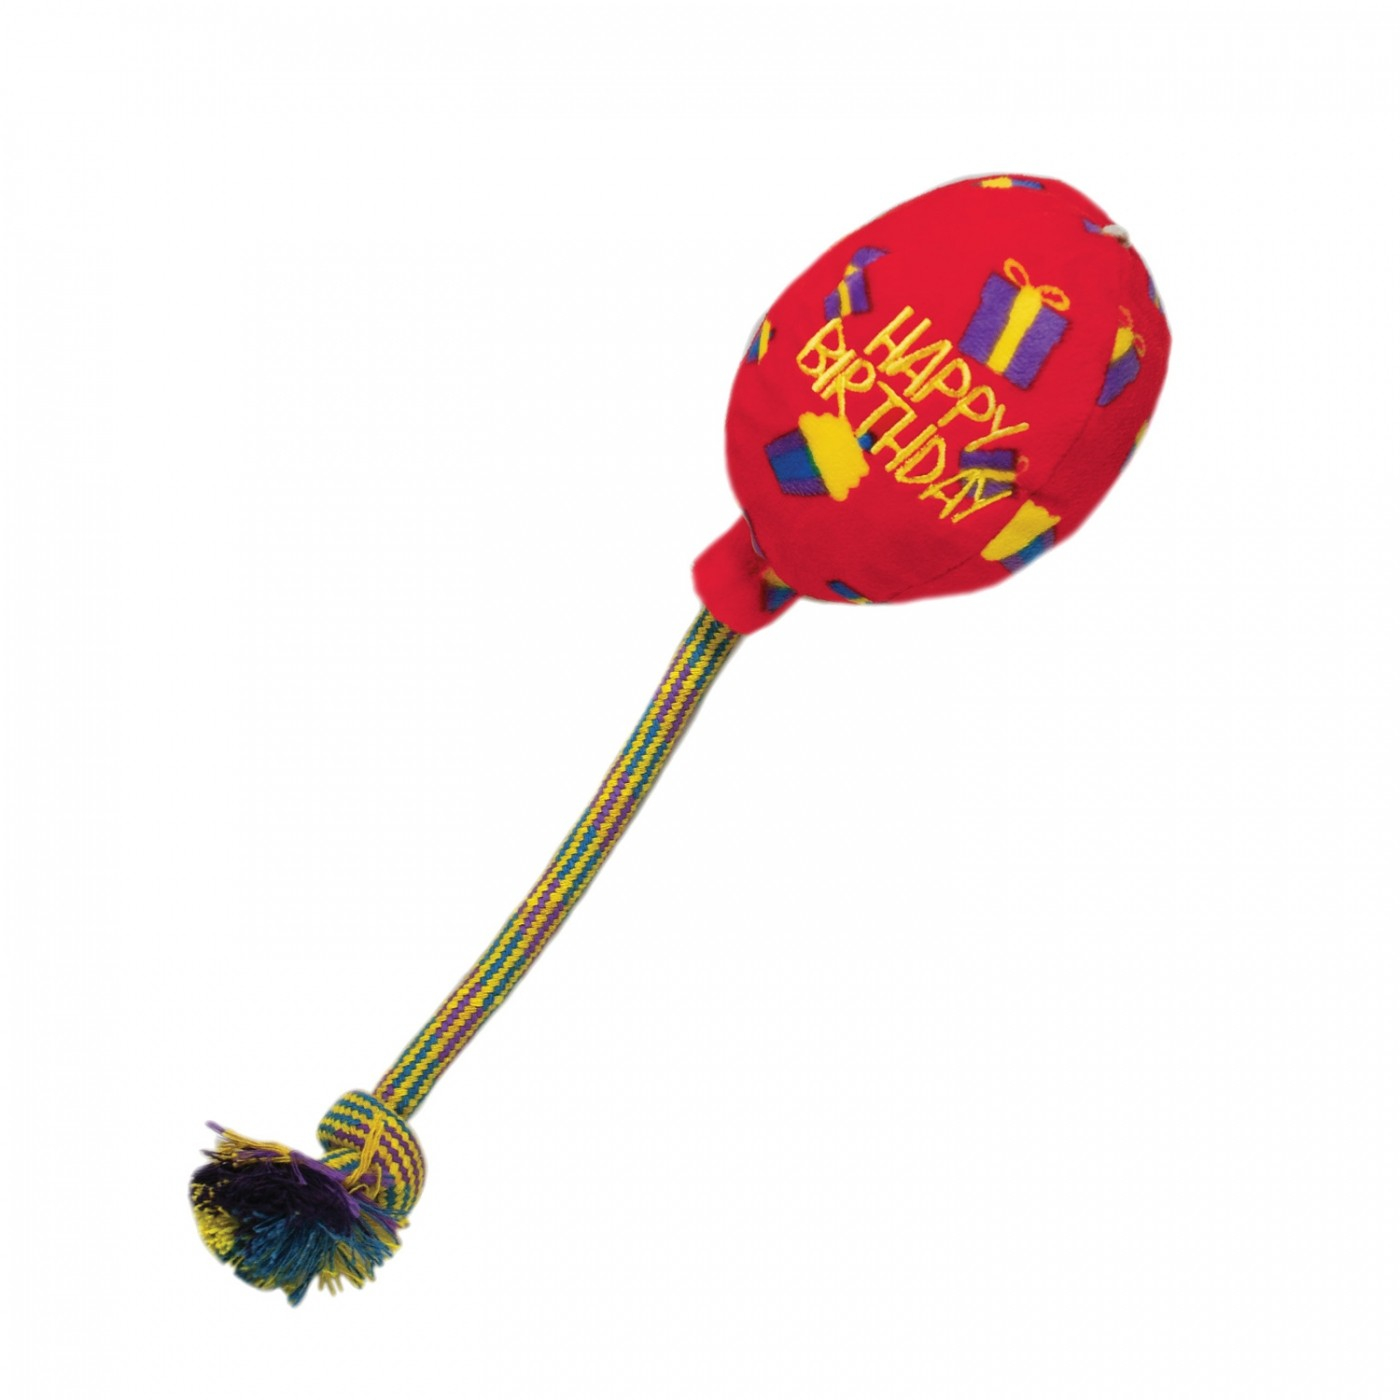 KONG Toy zum Mitnehmen für Hunde Happy Birthday Balloon Red Ballon